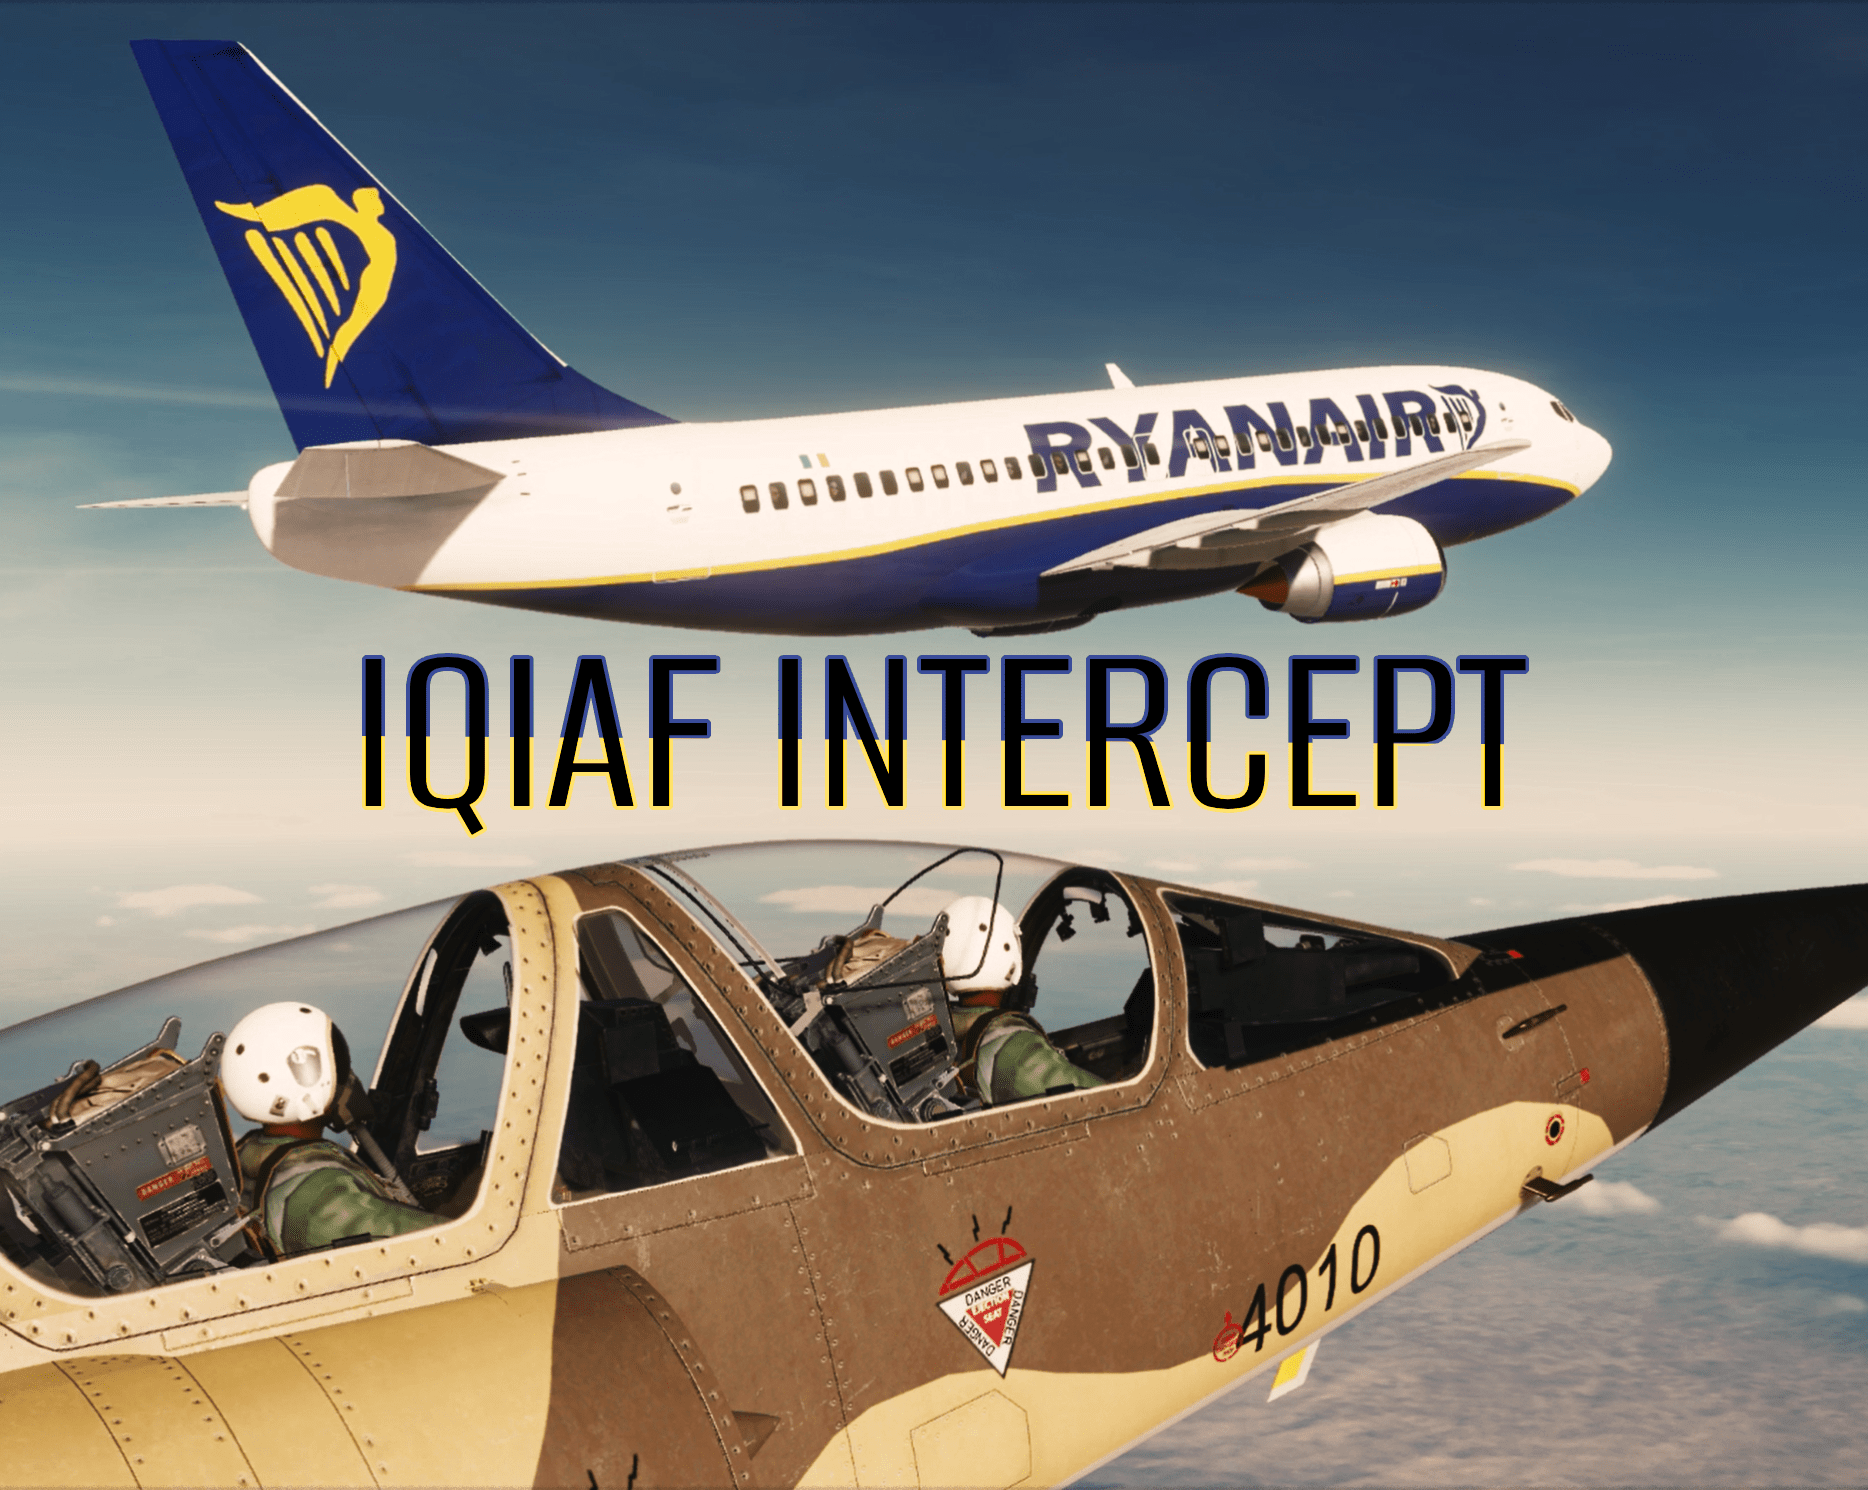 IQIAF Random Intercept Mission v1.0 (F-16, Mirage F1, JF-17)